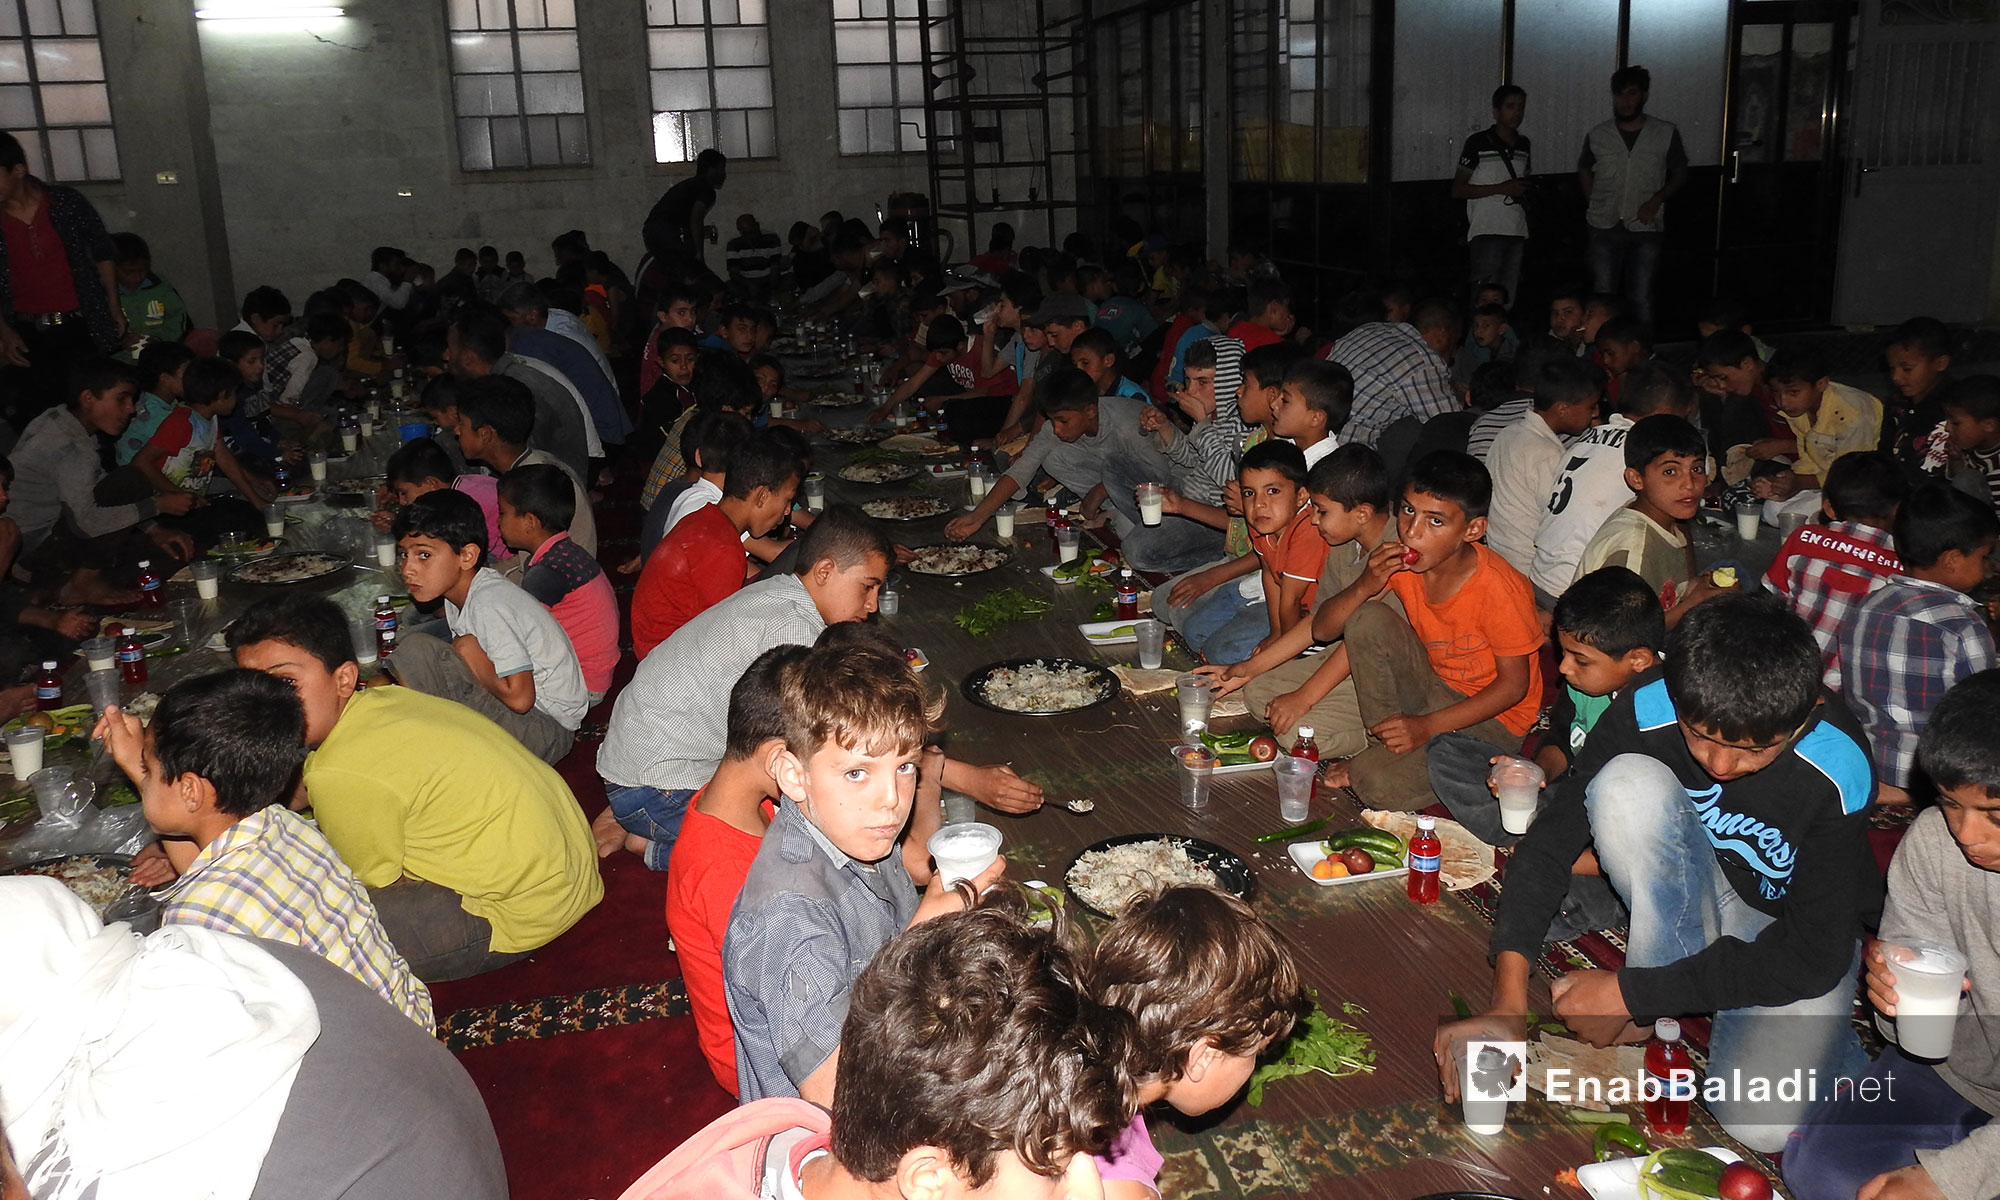 منظمة "طوبى" للإغاثة والتنمية تنظم حفل إفطار في بلدة دابق بريف حلب - 21 حزيران 2017 (عنب بلدي)